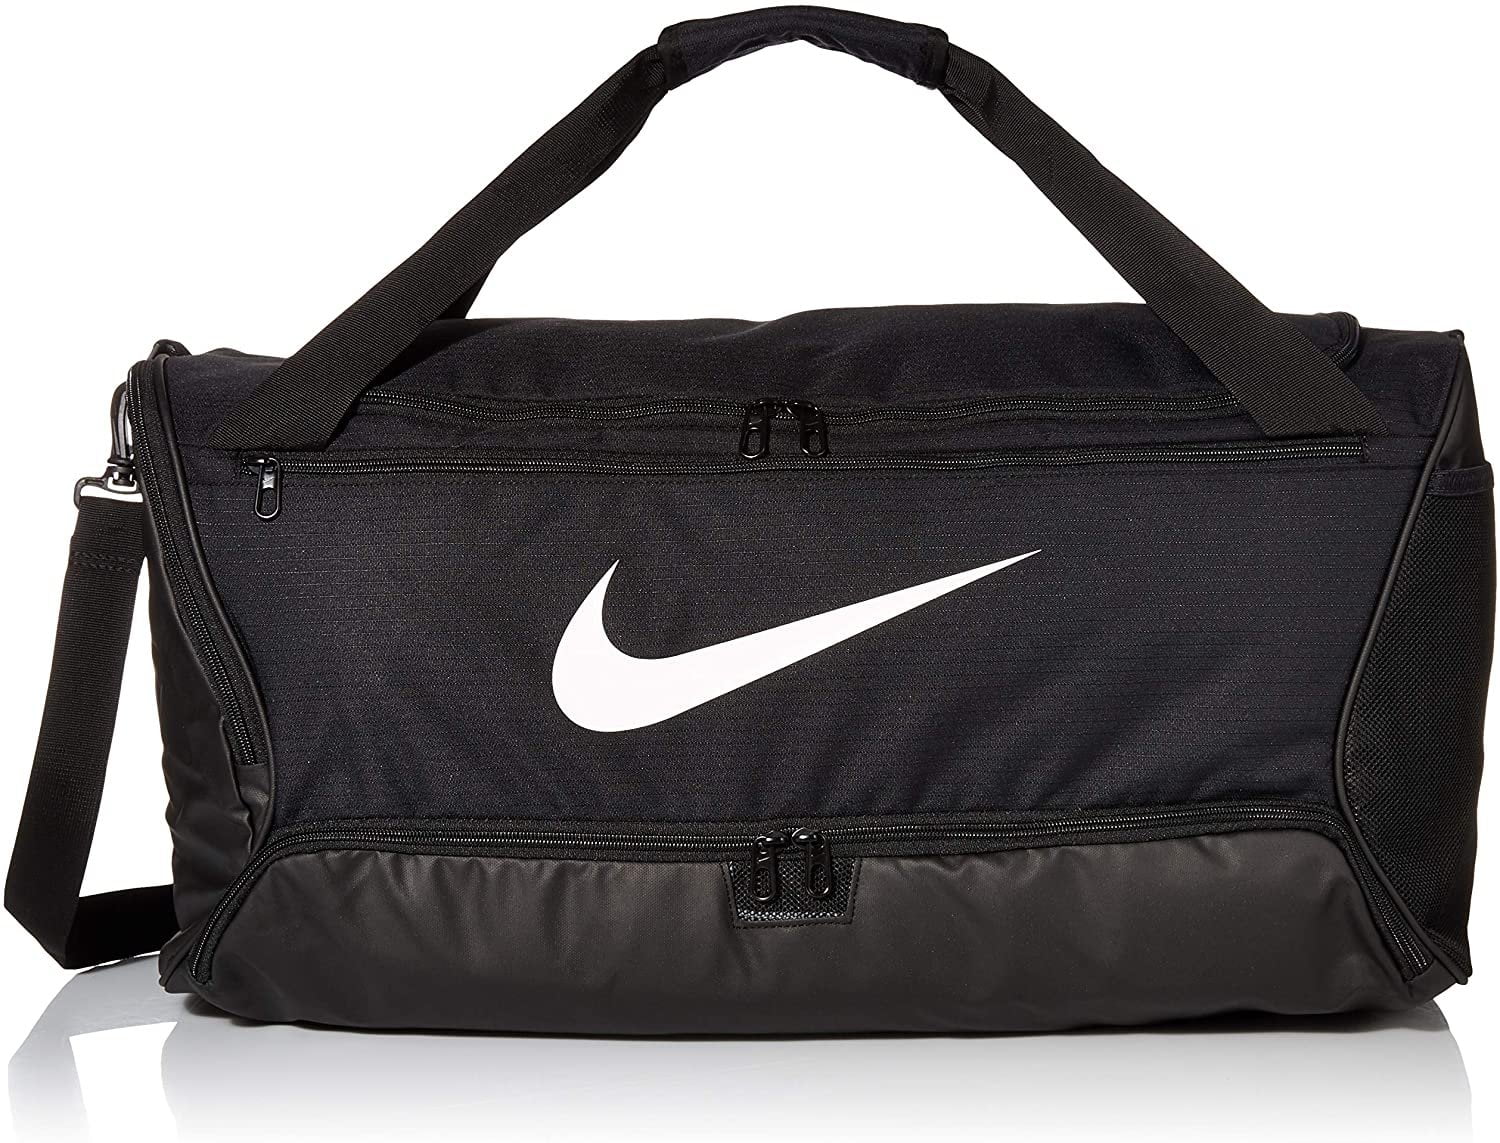 Nike Women's Travel Duffle Bags - Bags | Stylicy